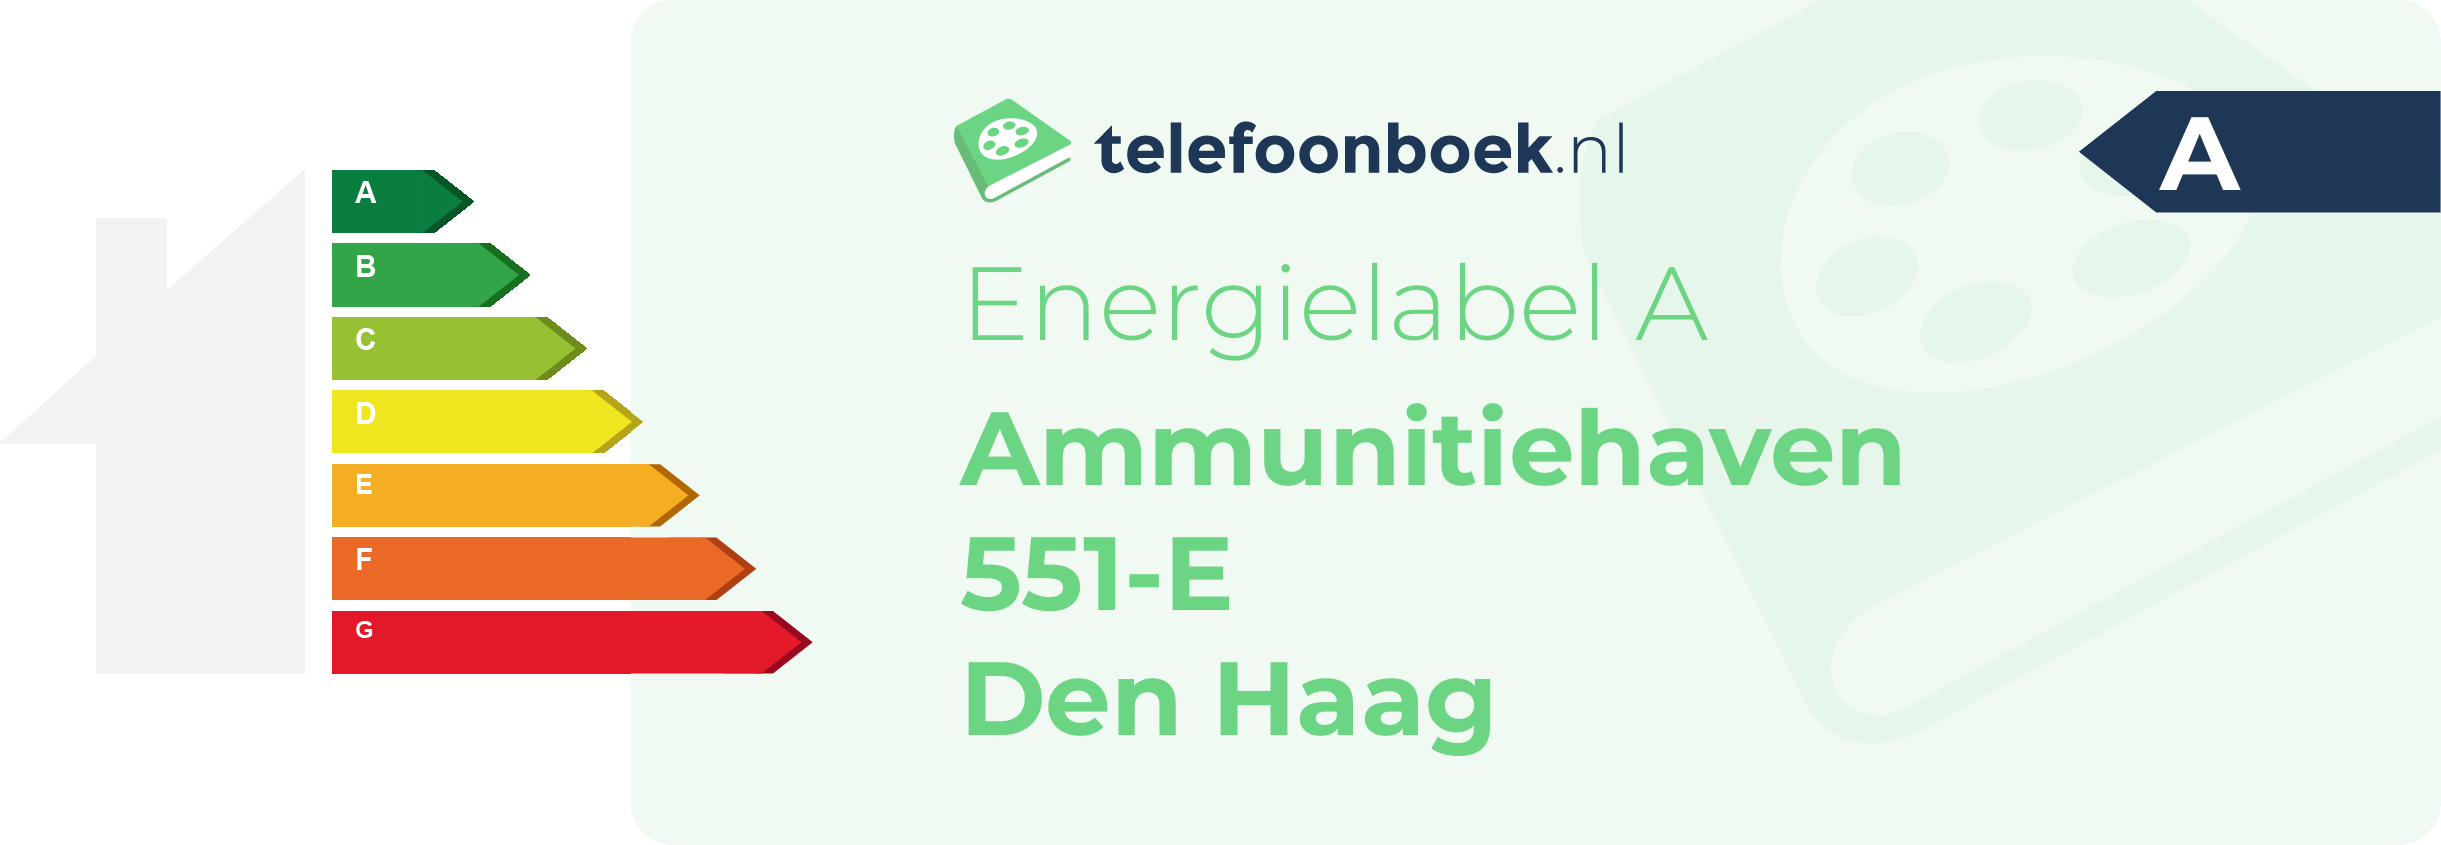 Energielabel Ammunitiehaven 551-E Den Haag